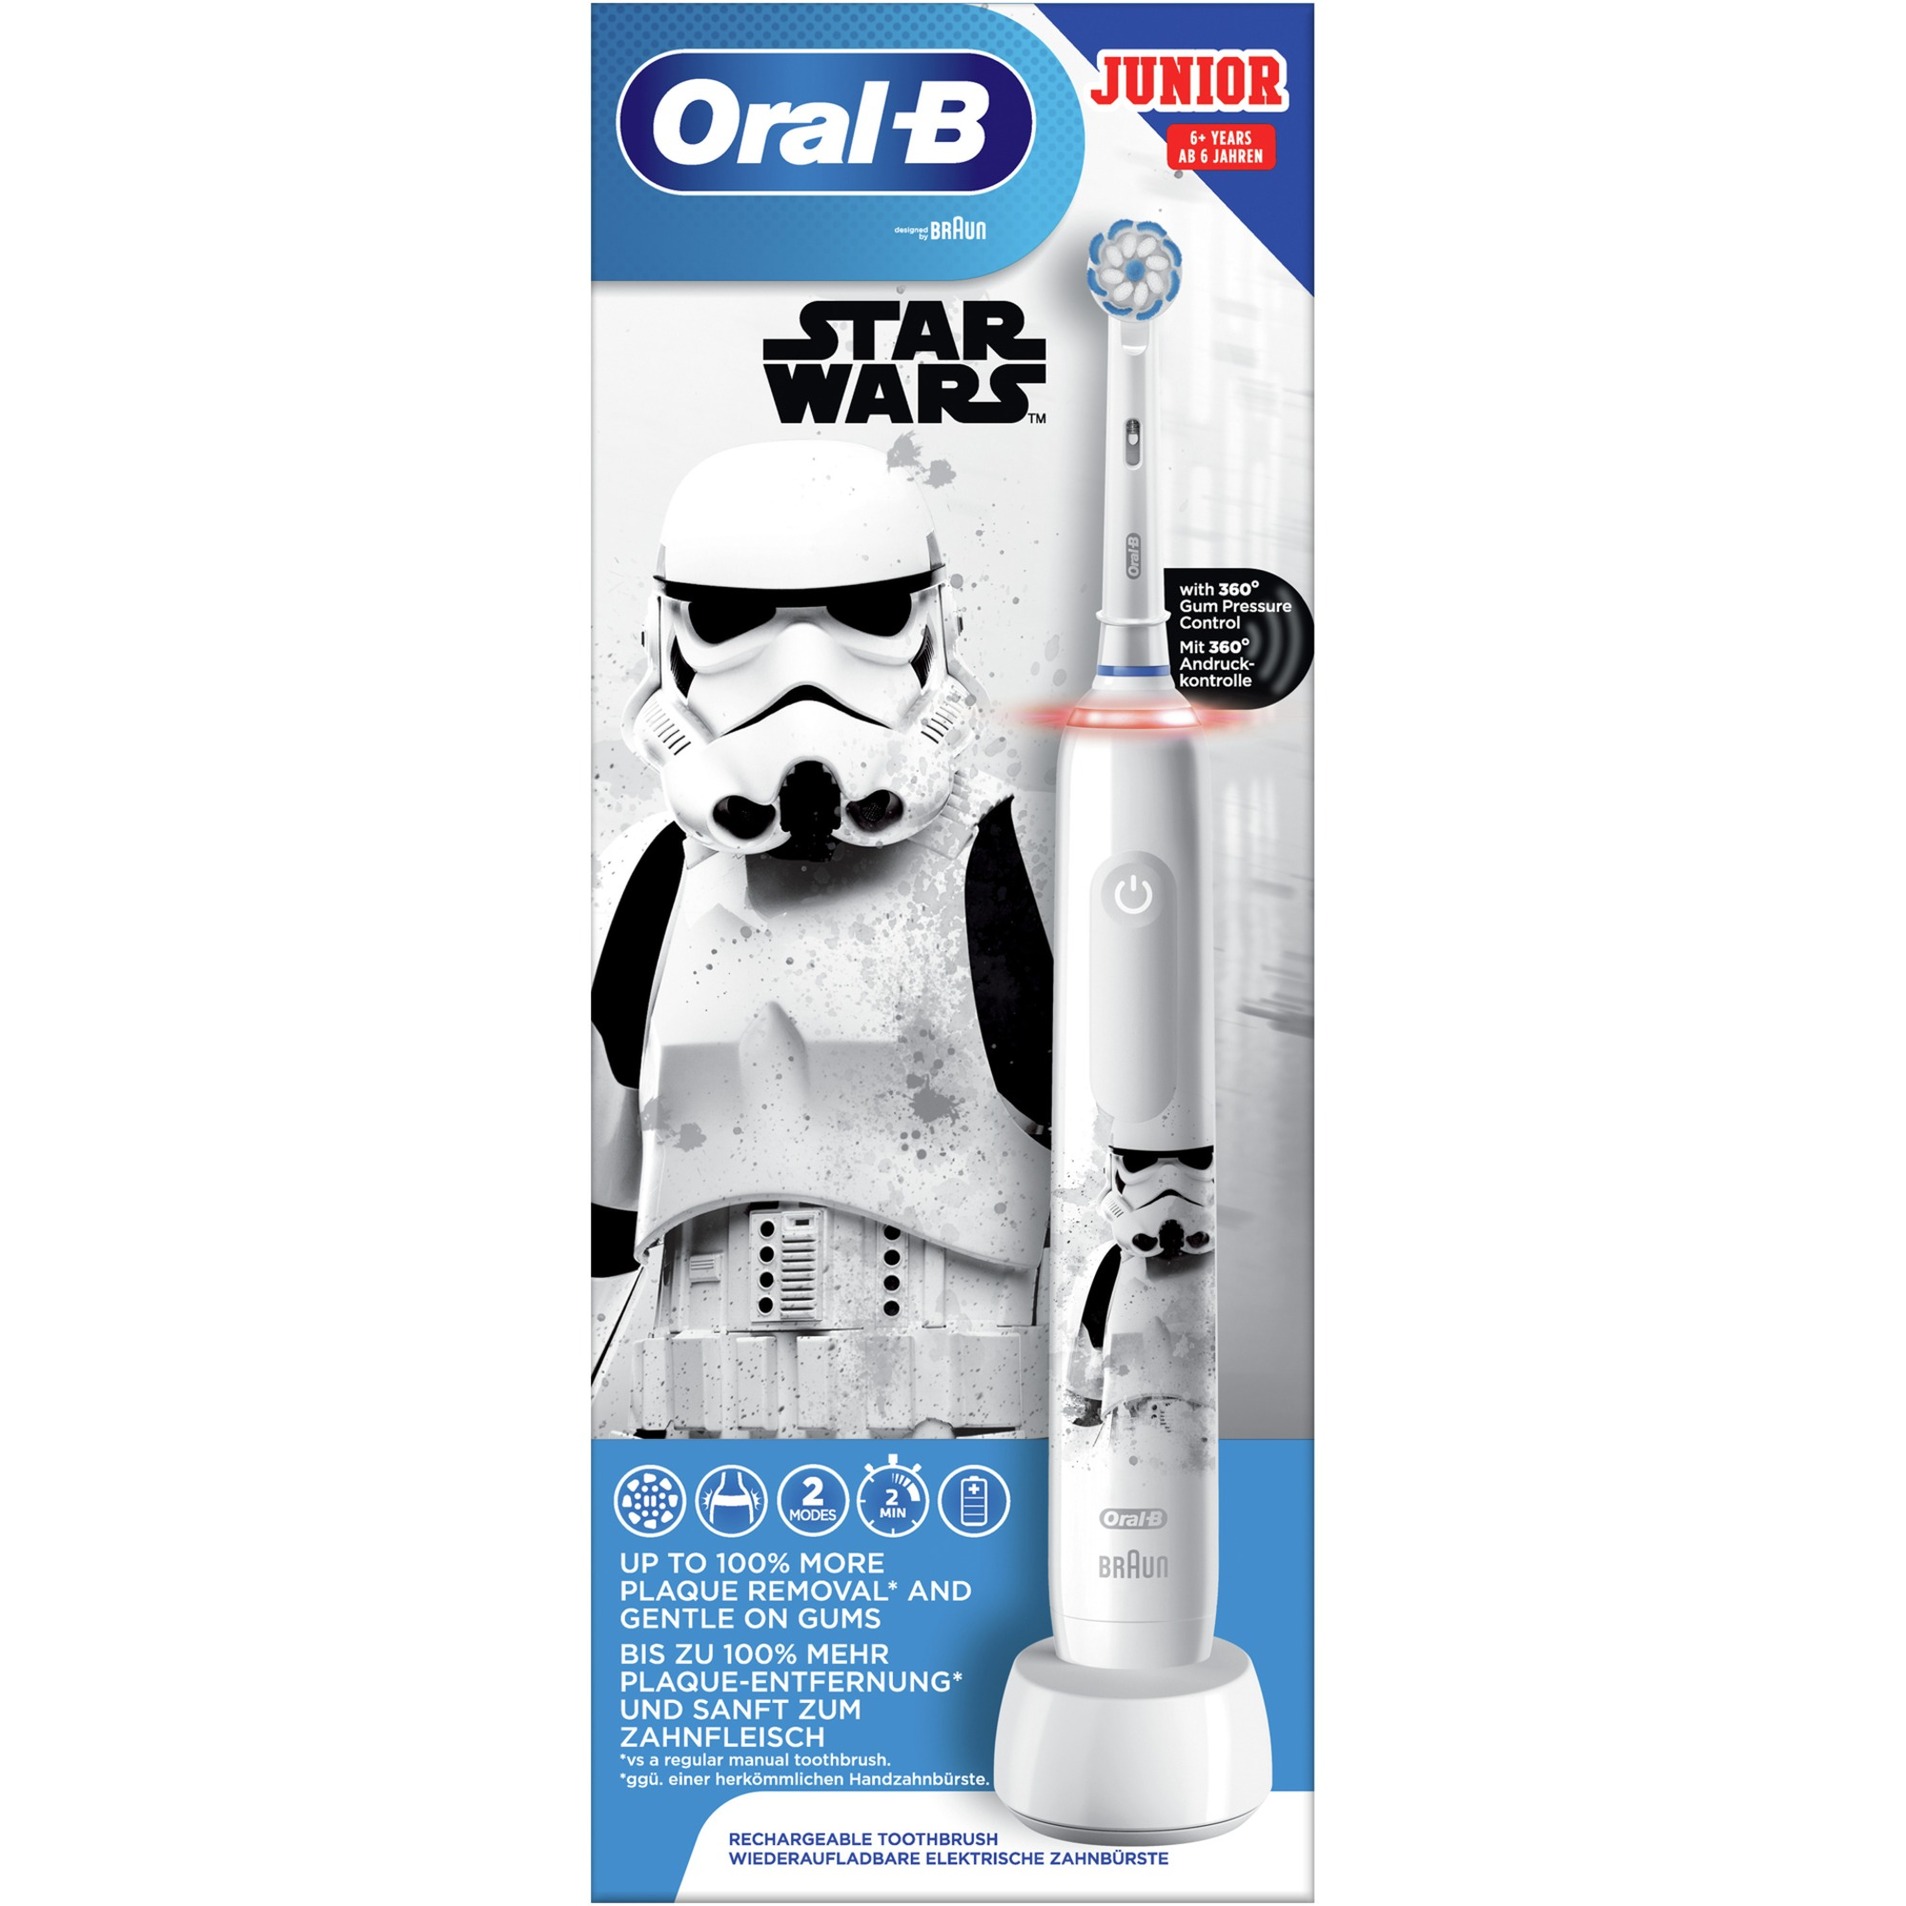 Image of Alternate - Oral-B Junior Star Wars, Elektrische Zahnbürste online einkaufen bei Alternate